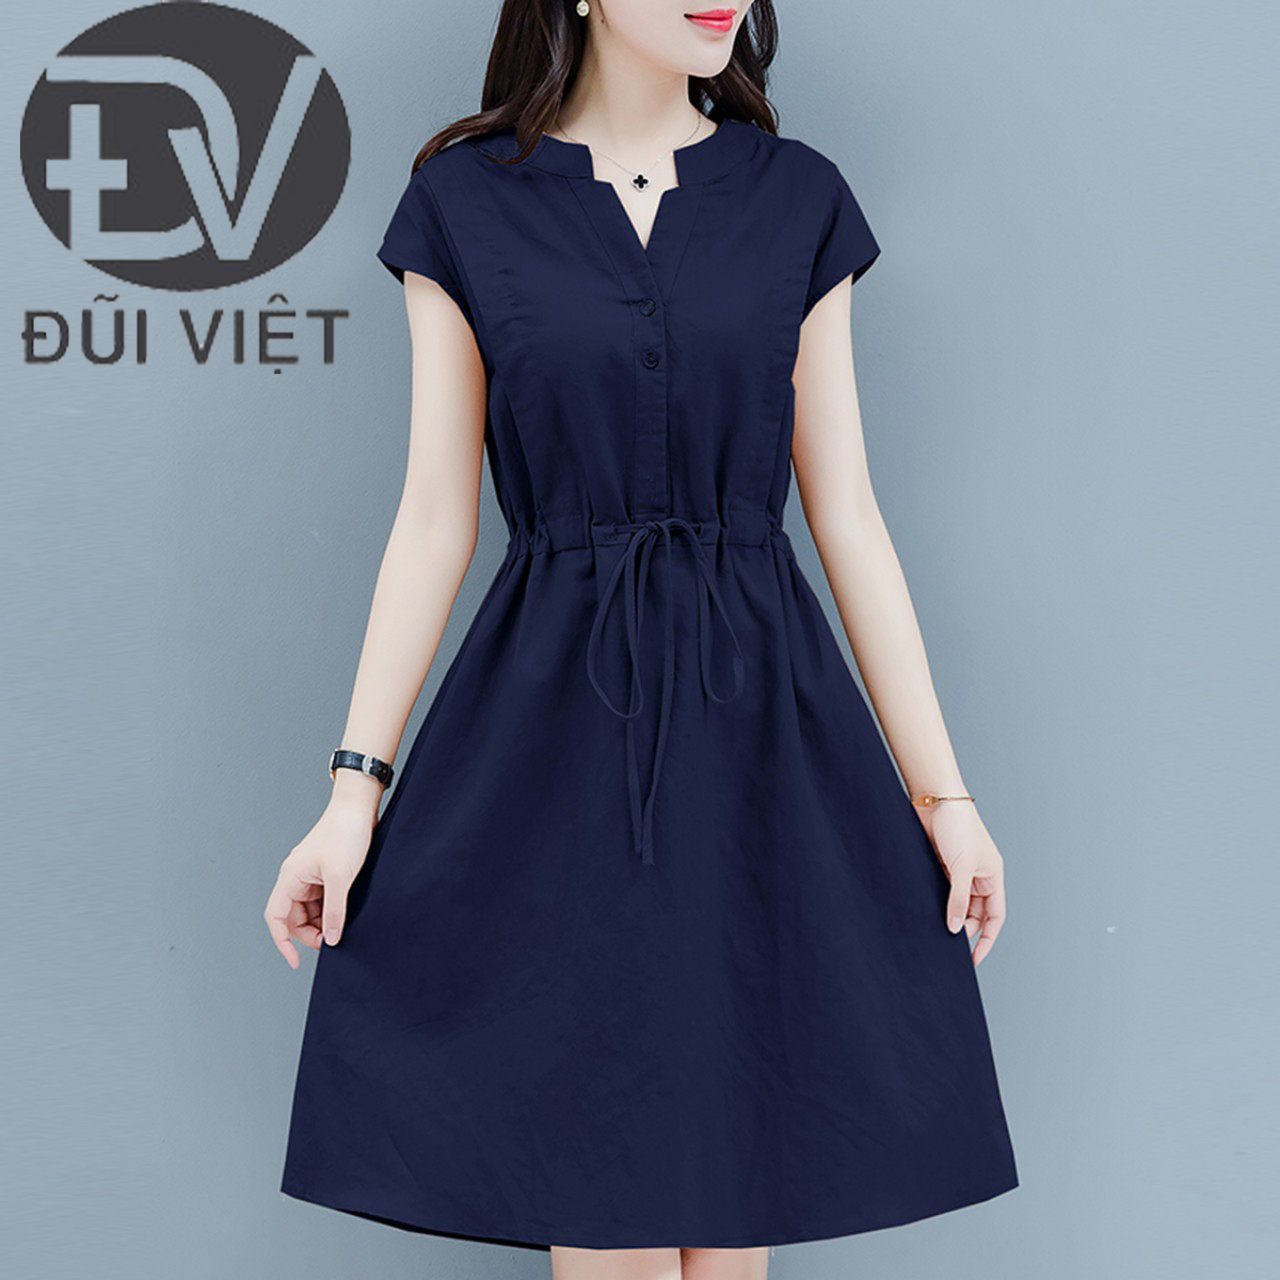 Đầm Linen nữ cổ V rút eo 2 túi phong cách công sở Đũi Việt Dv160